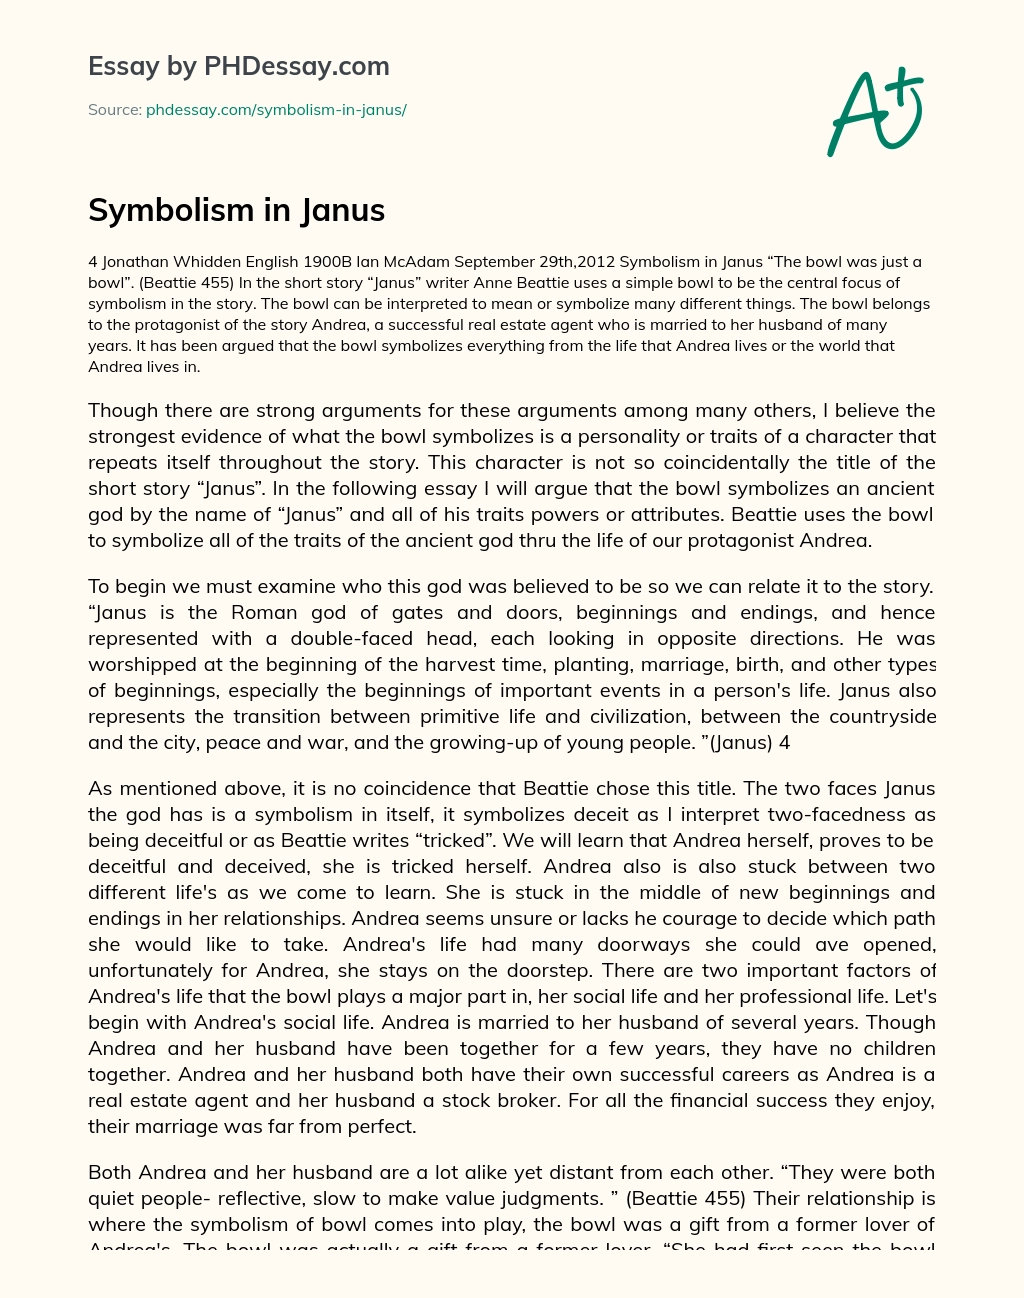 Symbolism in Janus essay